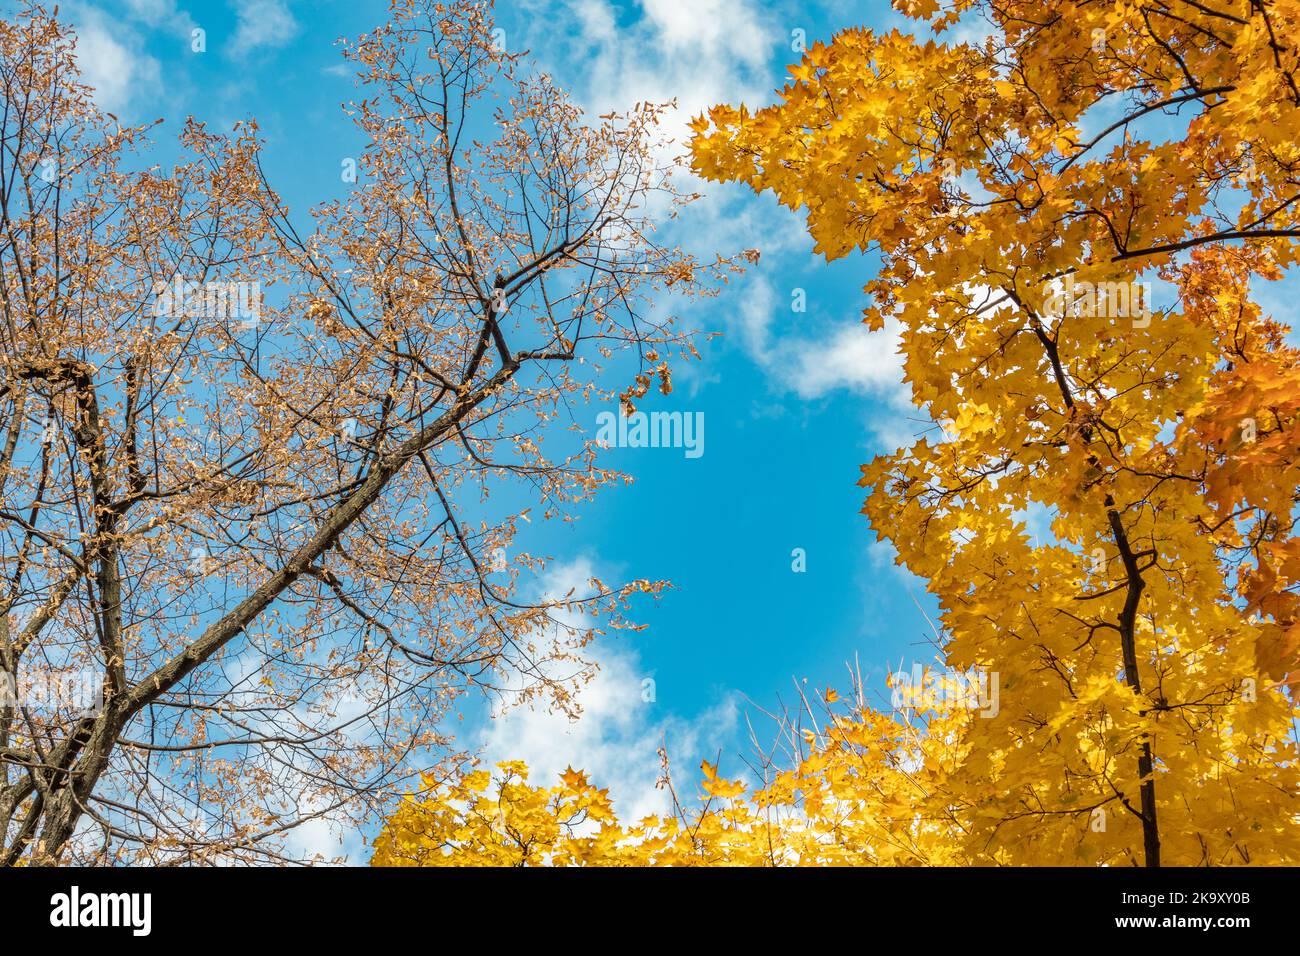 Autunno stagione d'oro guardare in su. Rami d'albero con foglie gialle su cielo blu con nuvole, fondo naturale autunnale della foresta Foto Stock